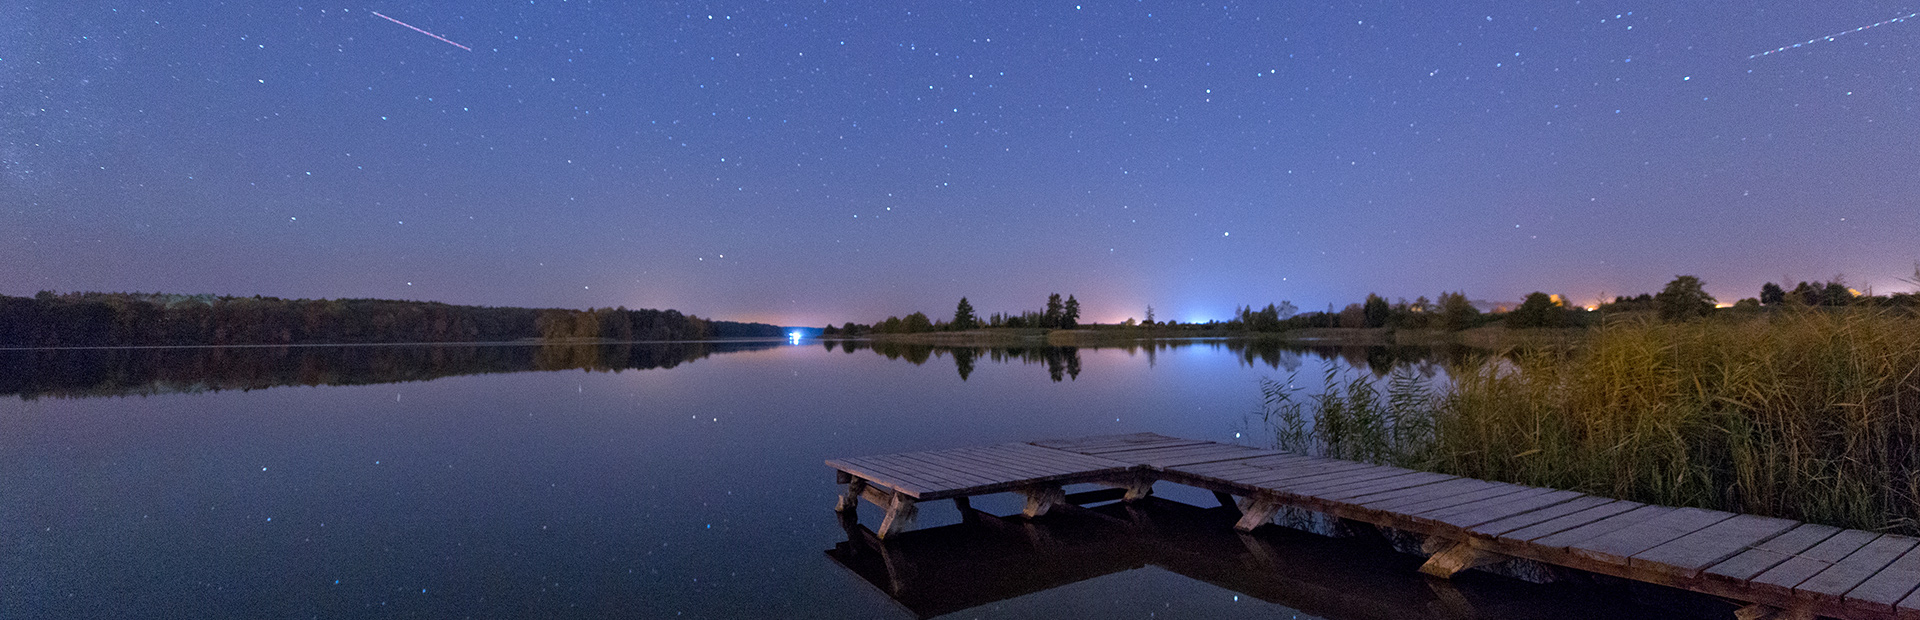 Zdjęcie przedstawia pomost nad spokojnym jeziorem nocą. Zza linii jeziora widać światła domów.